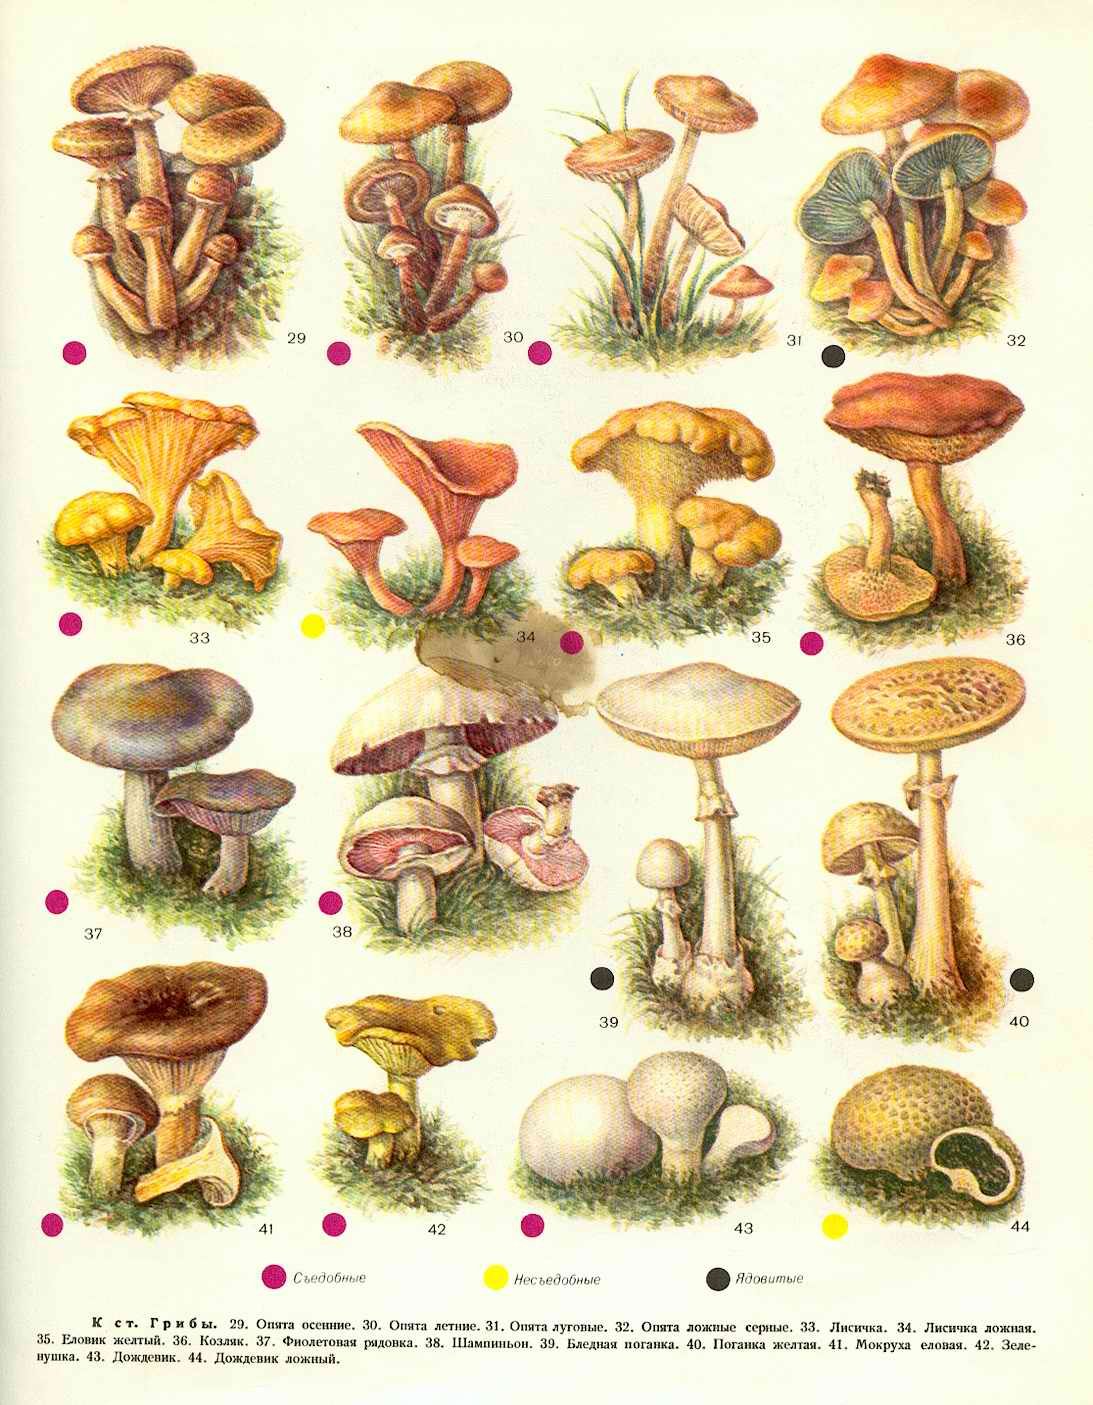 Определить вид грибов по фото